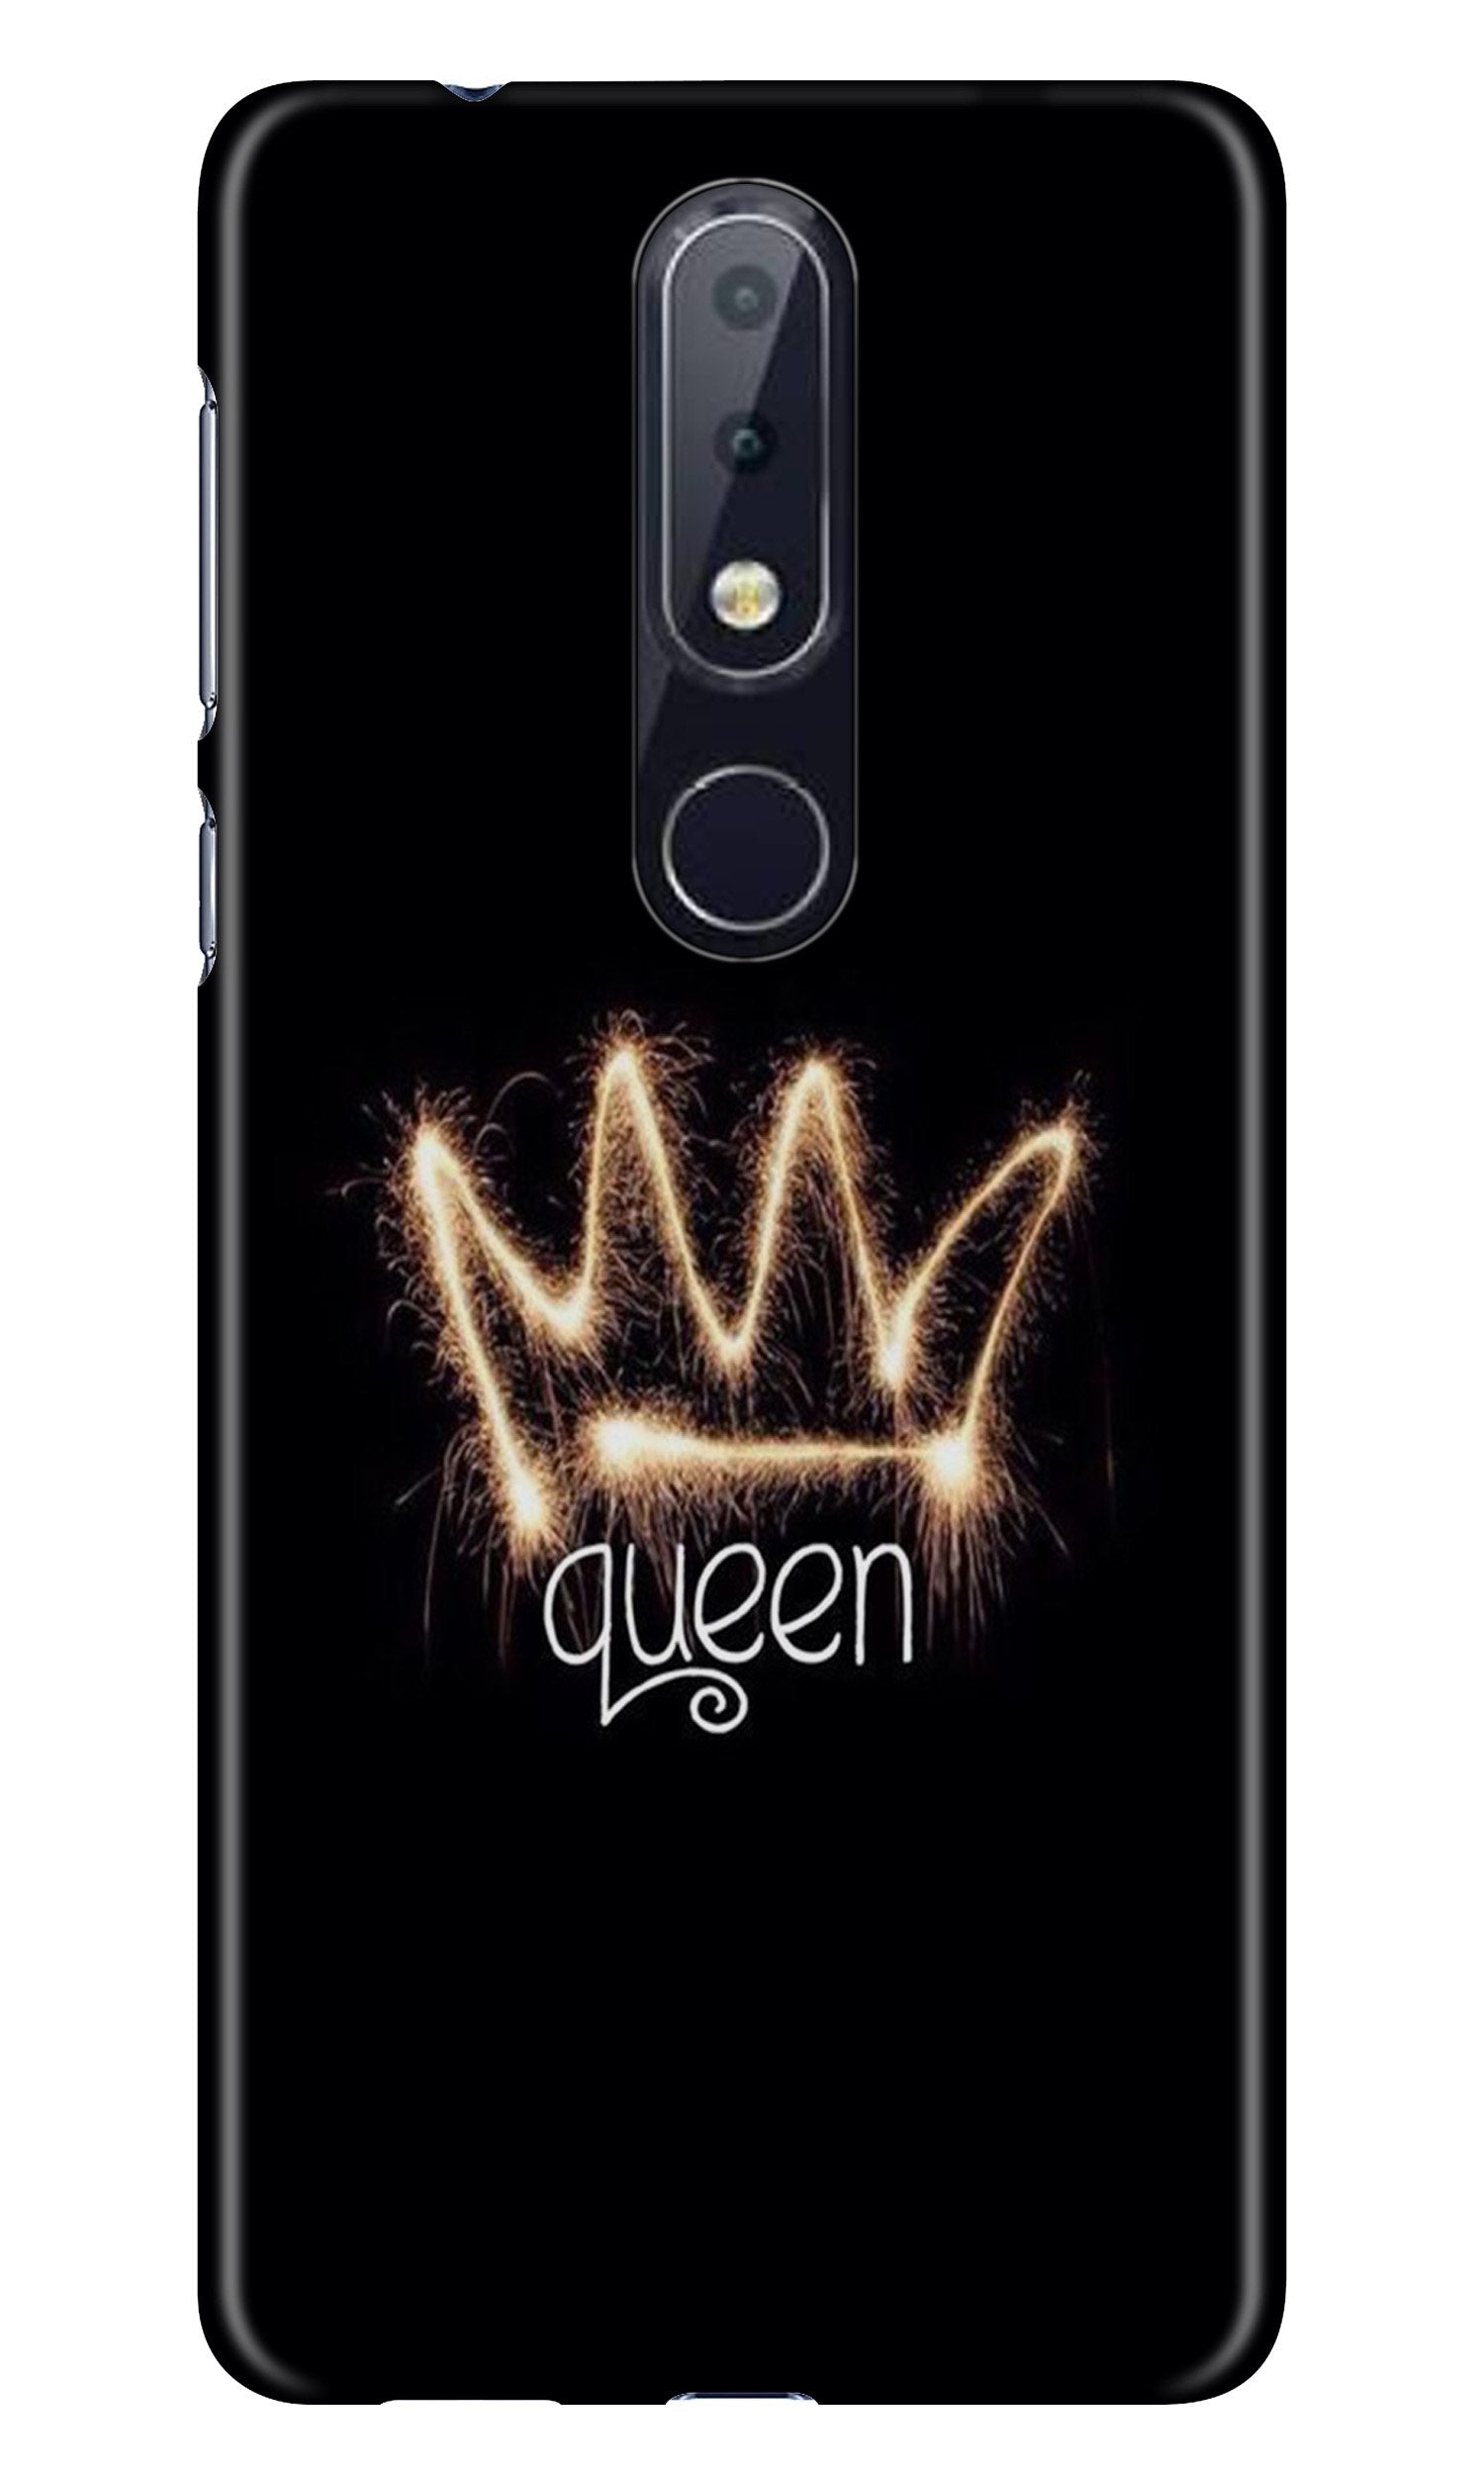 Queen Case for Nokia 7.1 (Design No. 270)